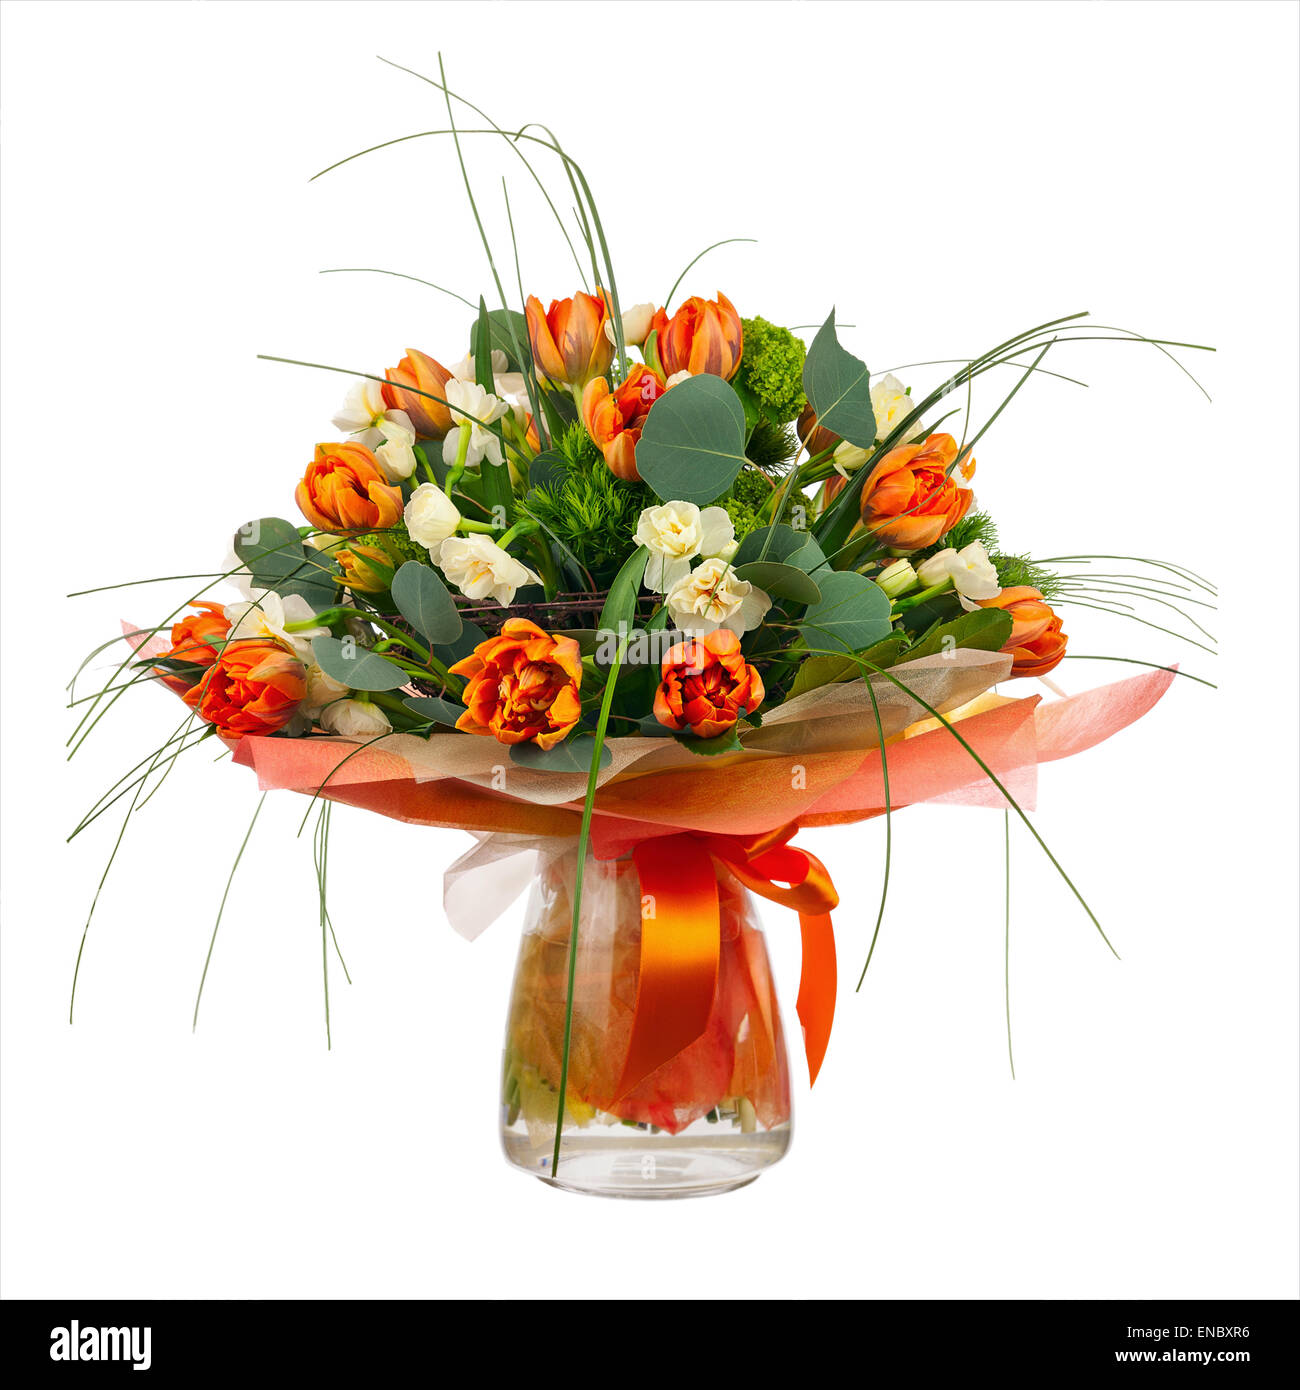 Bouquet de tulipes, narcisses et autres fleurs dans vase en verre isolé sur fond blanc. Libre. Banque D'Images